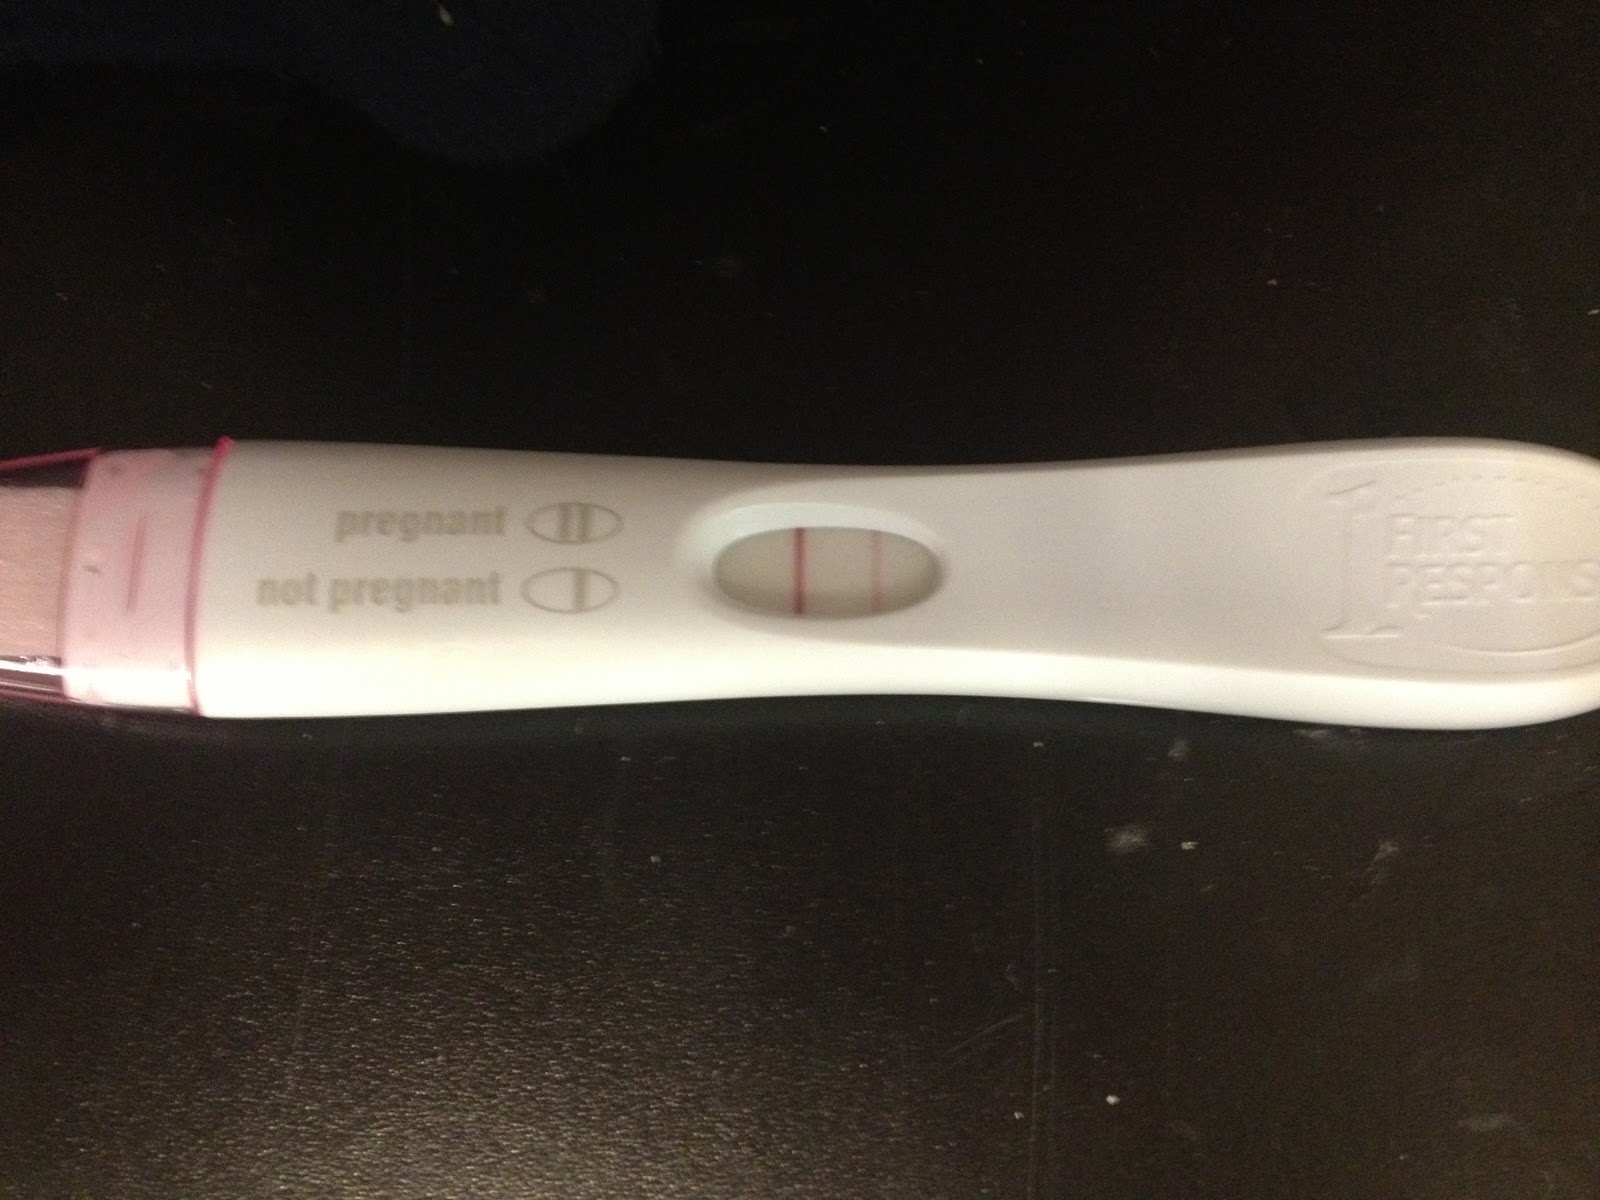 Тест на беременность 5 когда выйдет